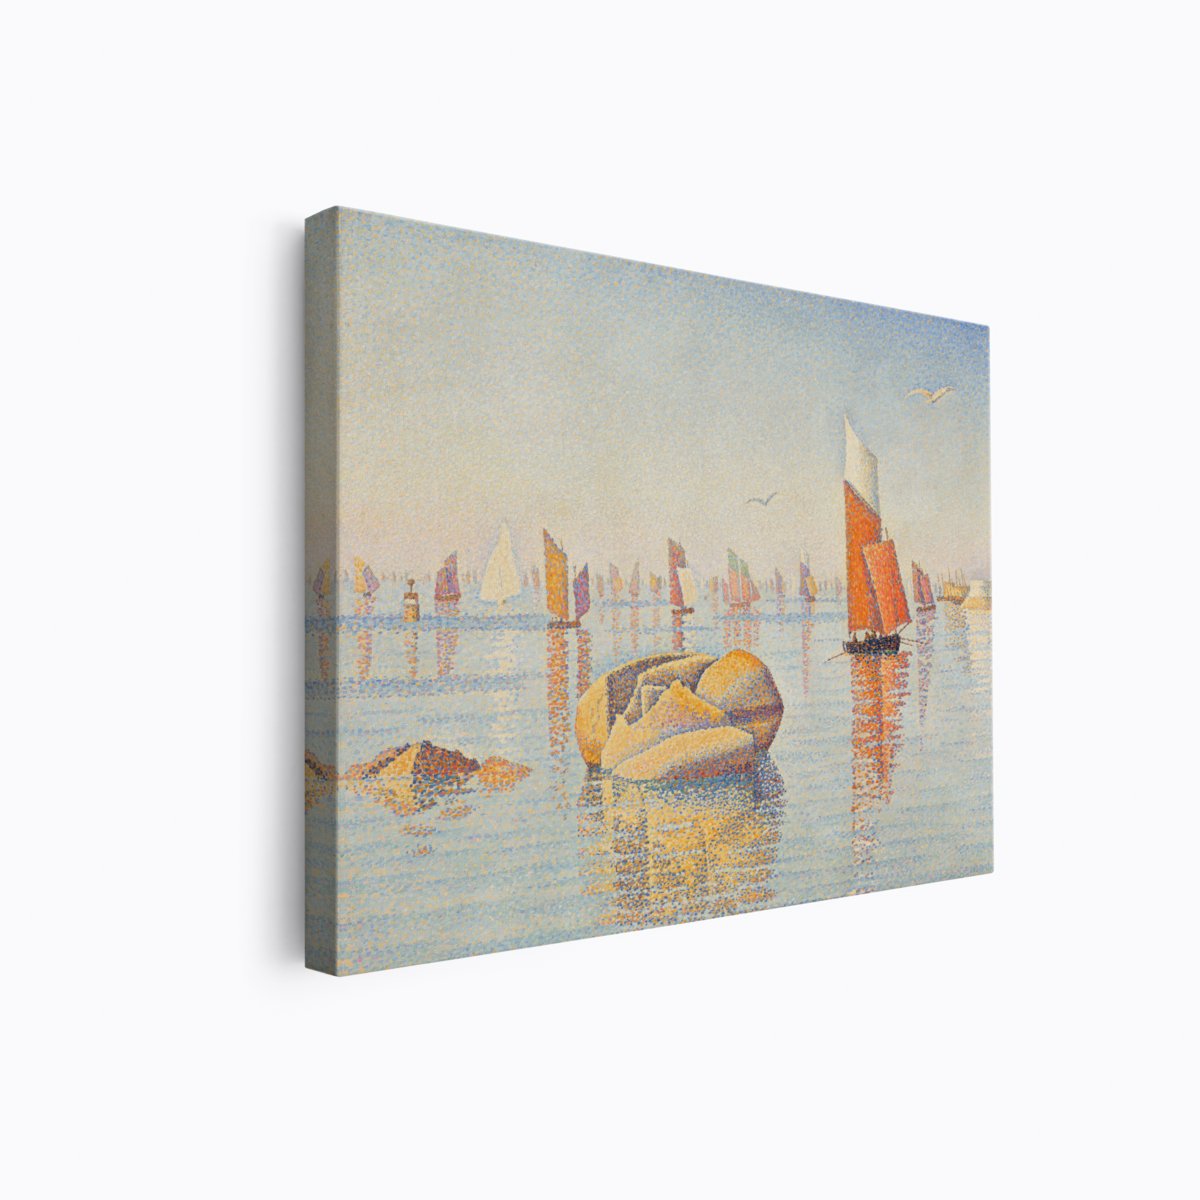 Corcaneau Calm Seas | Paul Signac | Ave Legato | Canvas Art Prints | Vintage Artwork